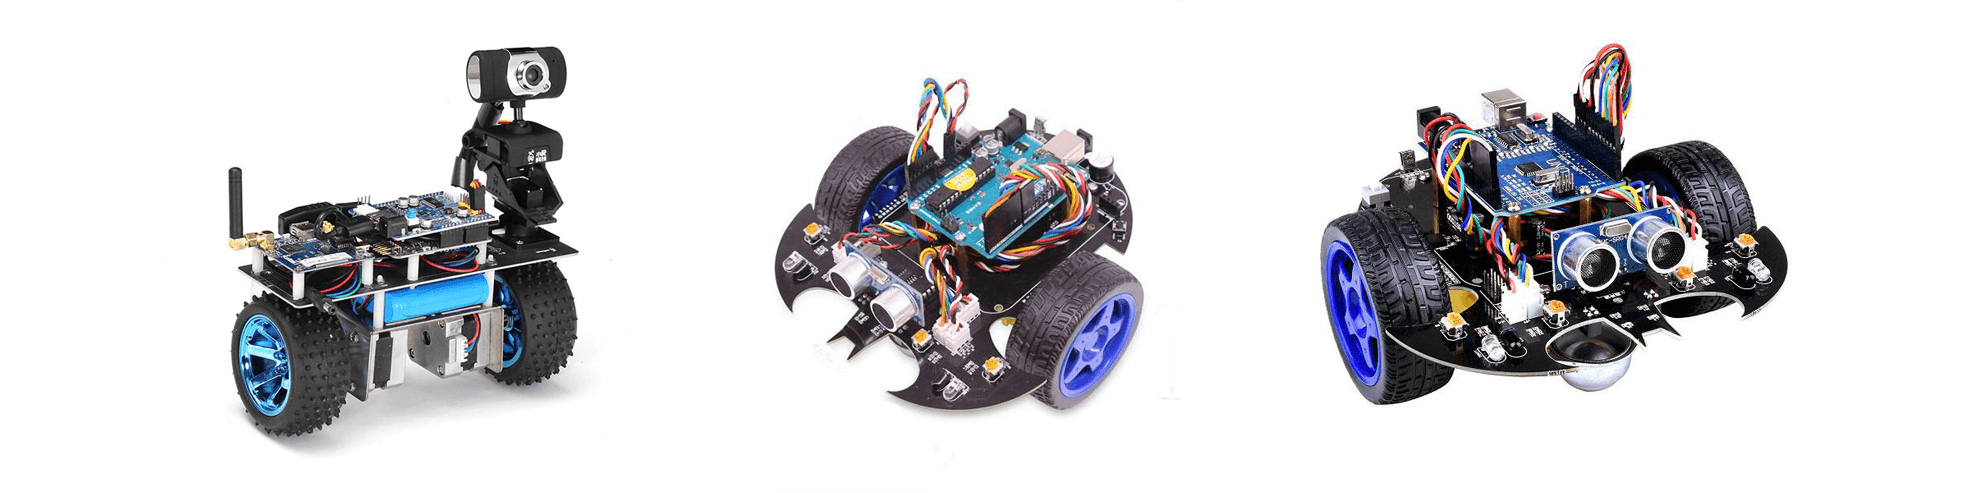 Smart Robot Cars